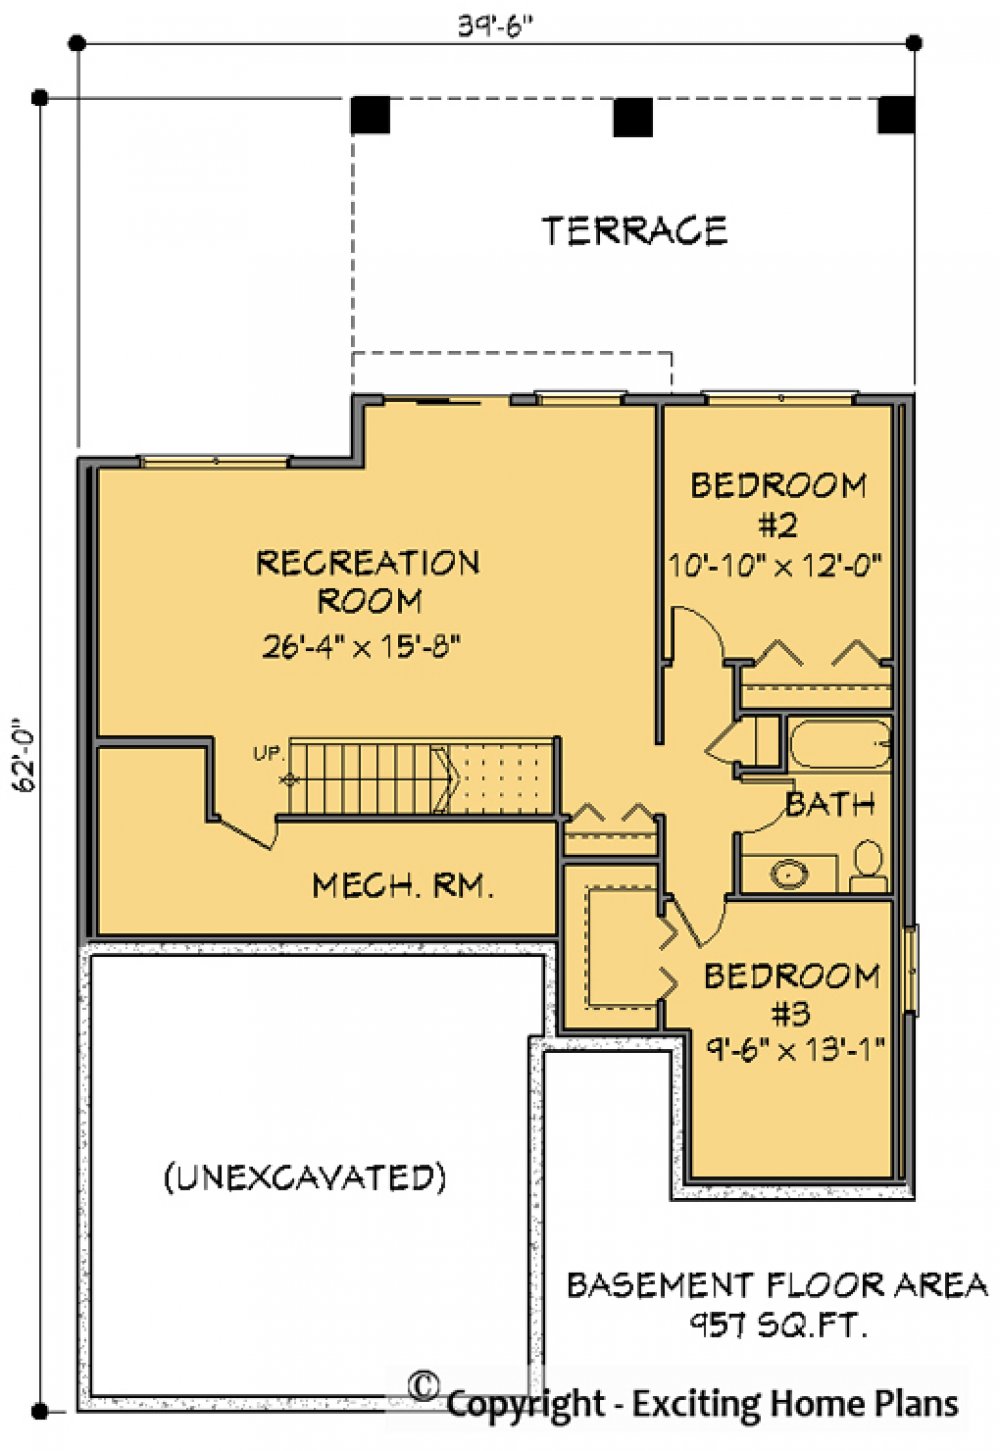 House Plan E1136-10 Lower Floor Plan